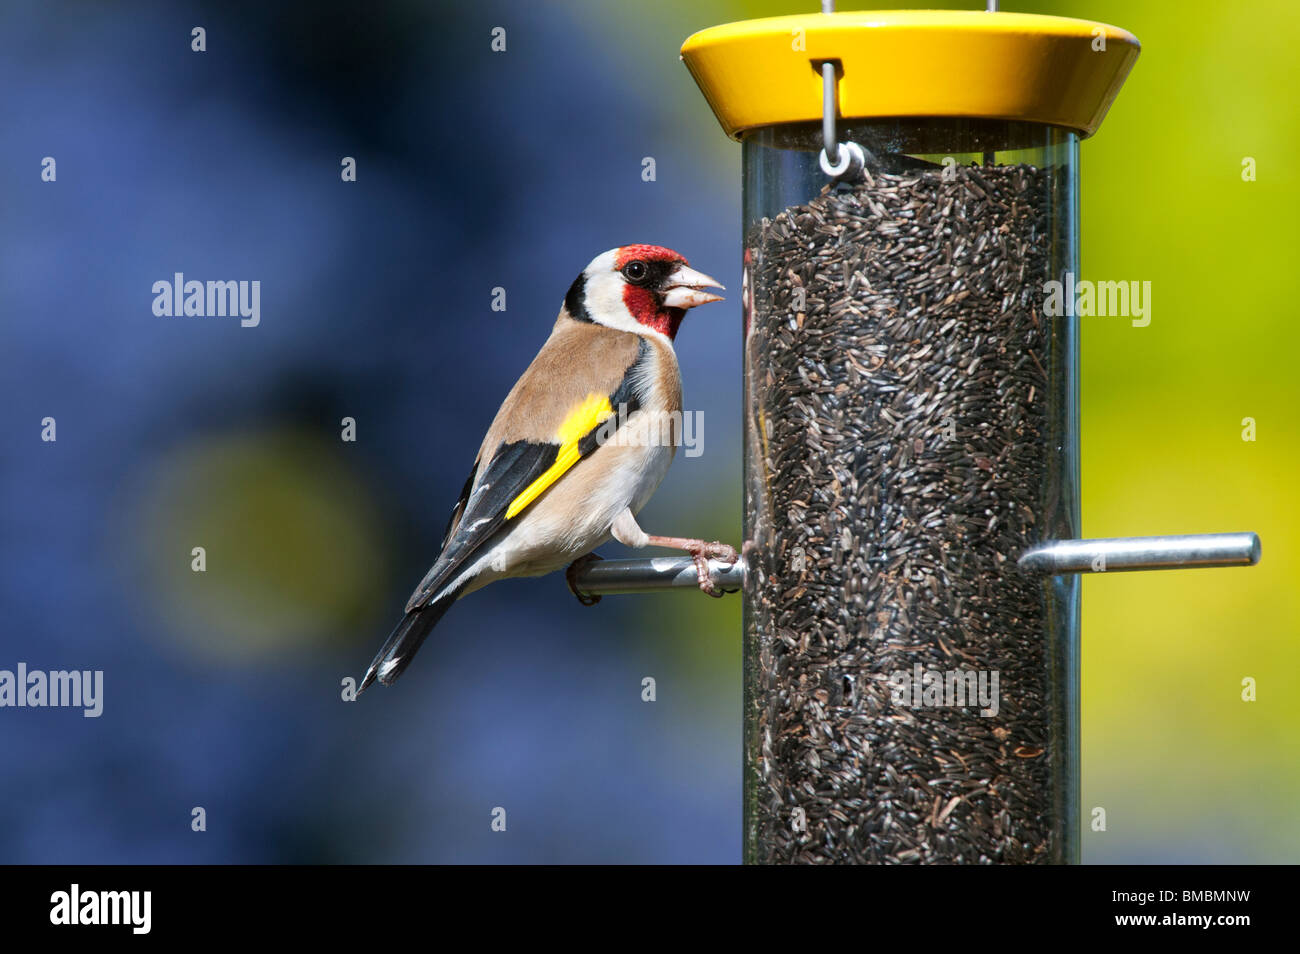 Jilguero en un ave nyjer alimentador de semillas en un jardín. Foto de stock